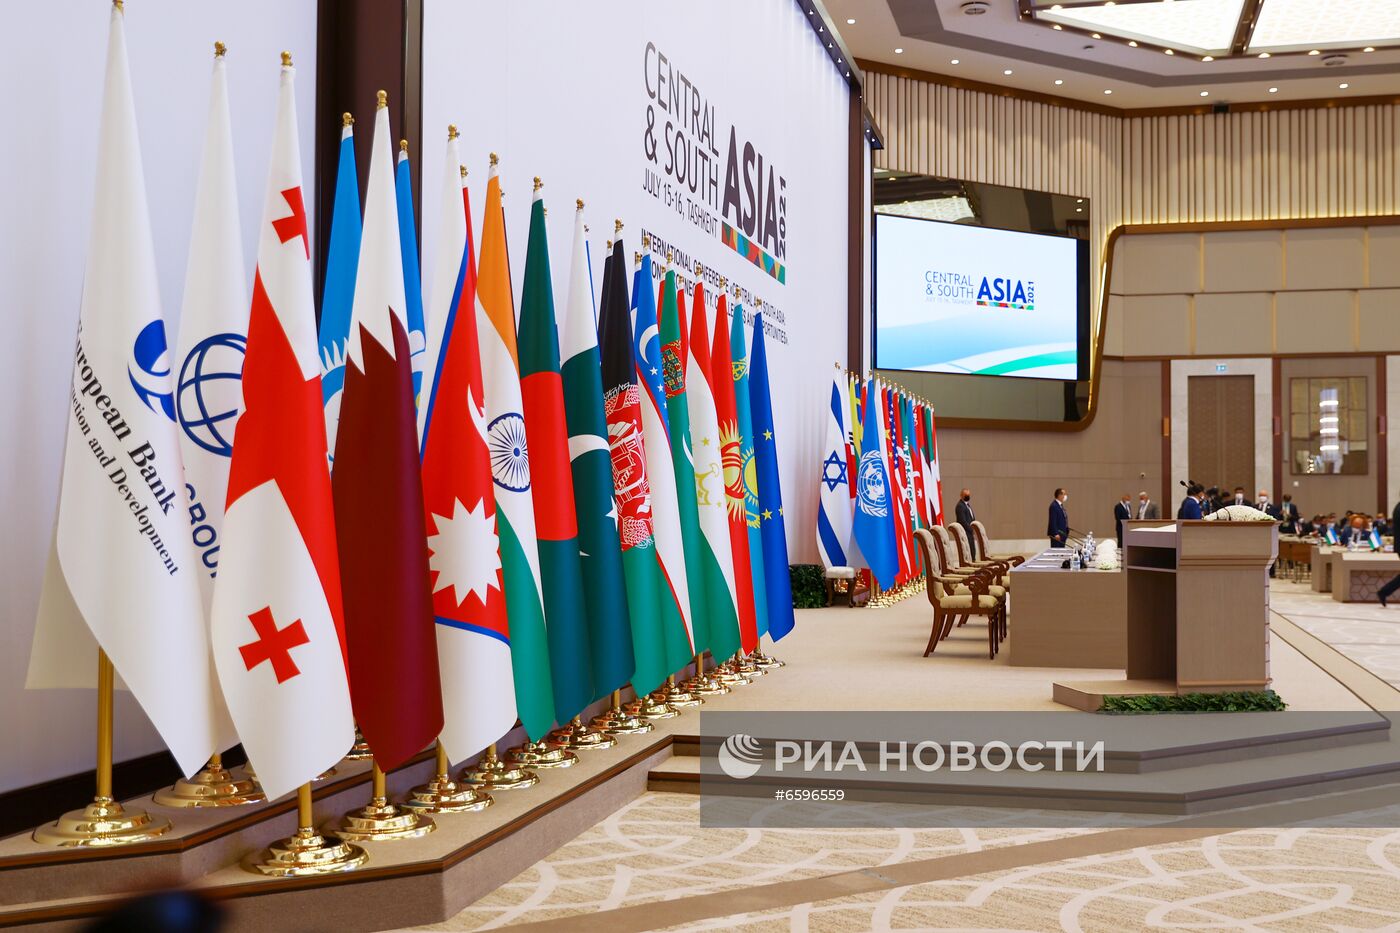 Международная конференция "Центральная и Южная Азия: региональная взаимосвязанность. Вызовы и возможности"